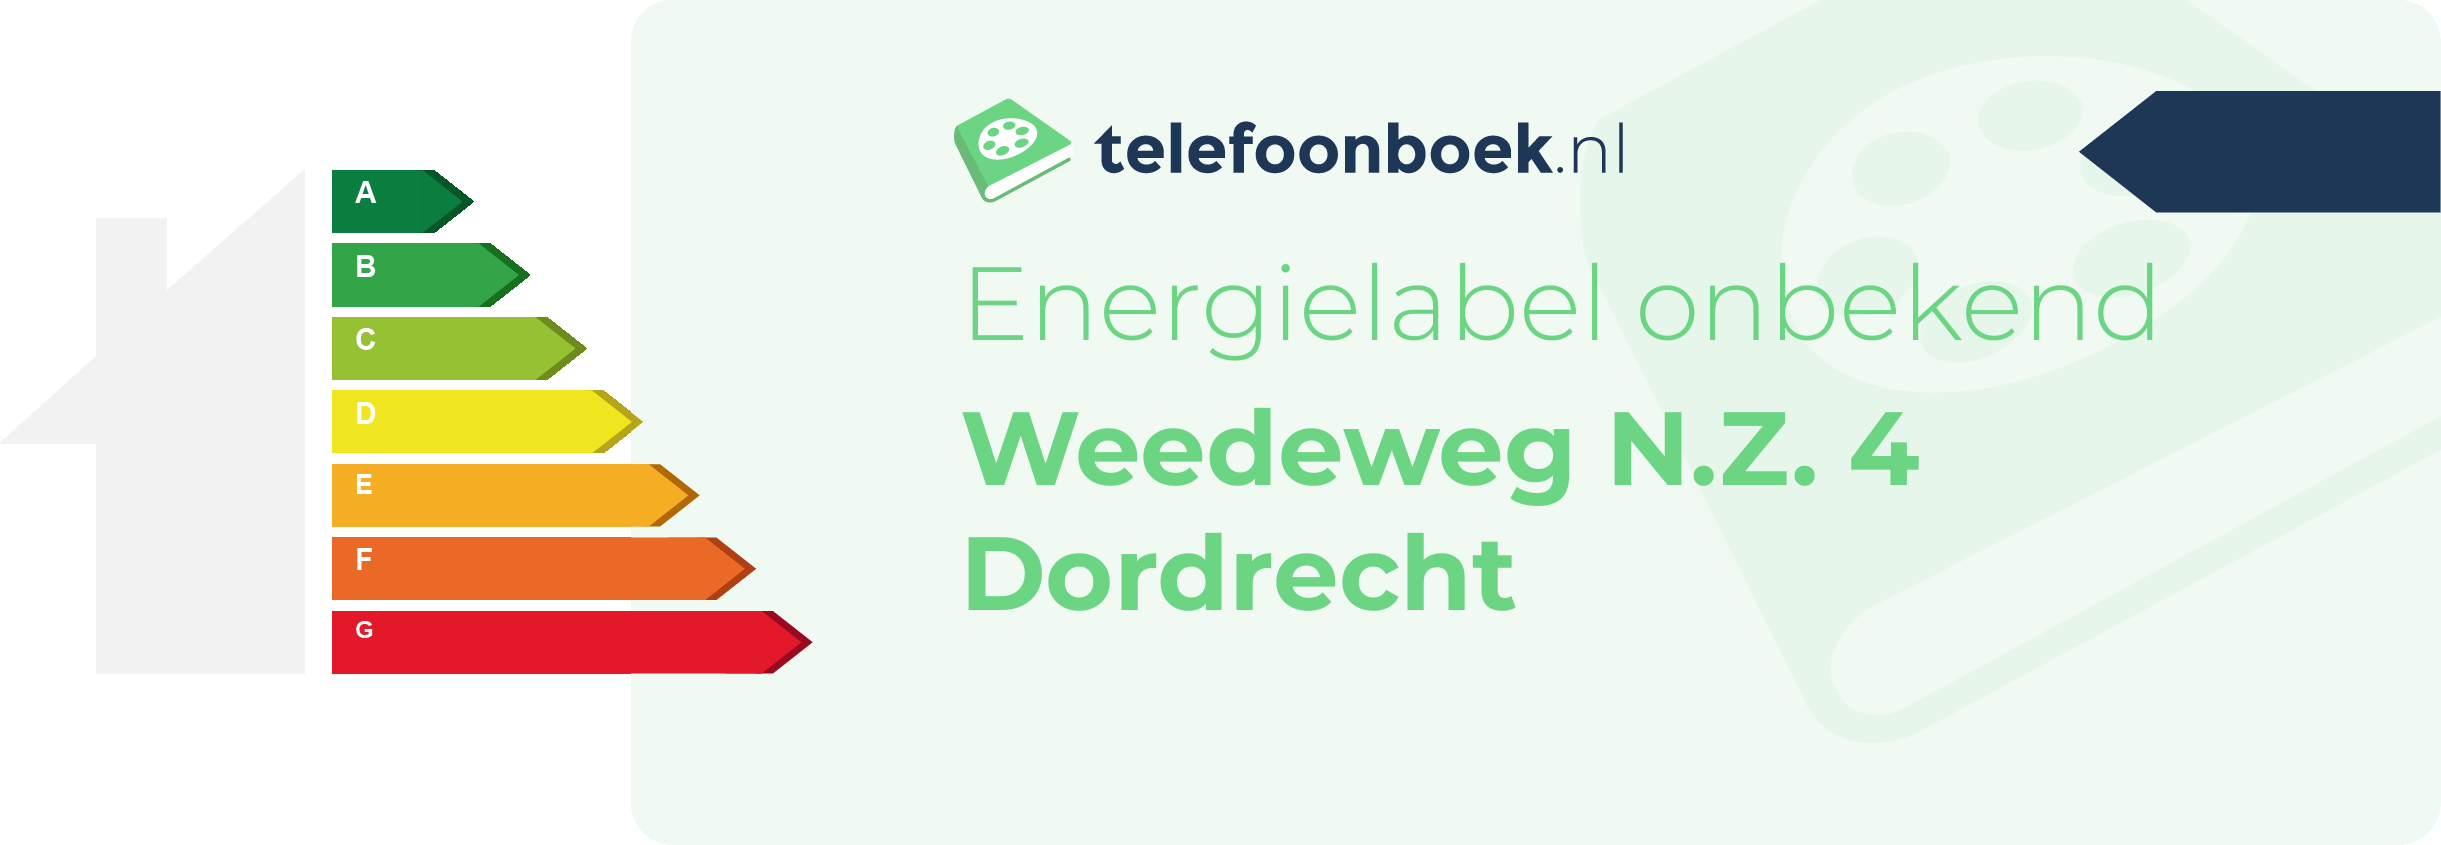 Energielabel Weedeweg N.Z. 4 Dordrecht